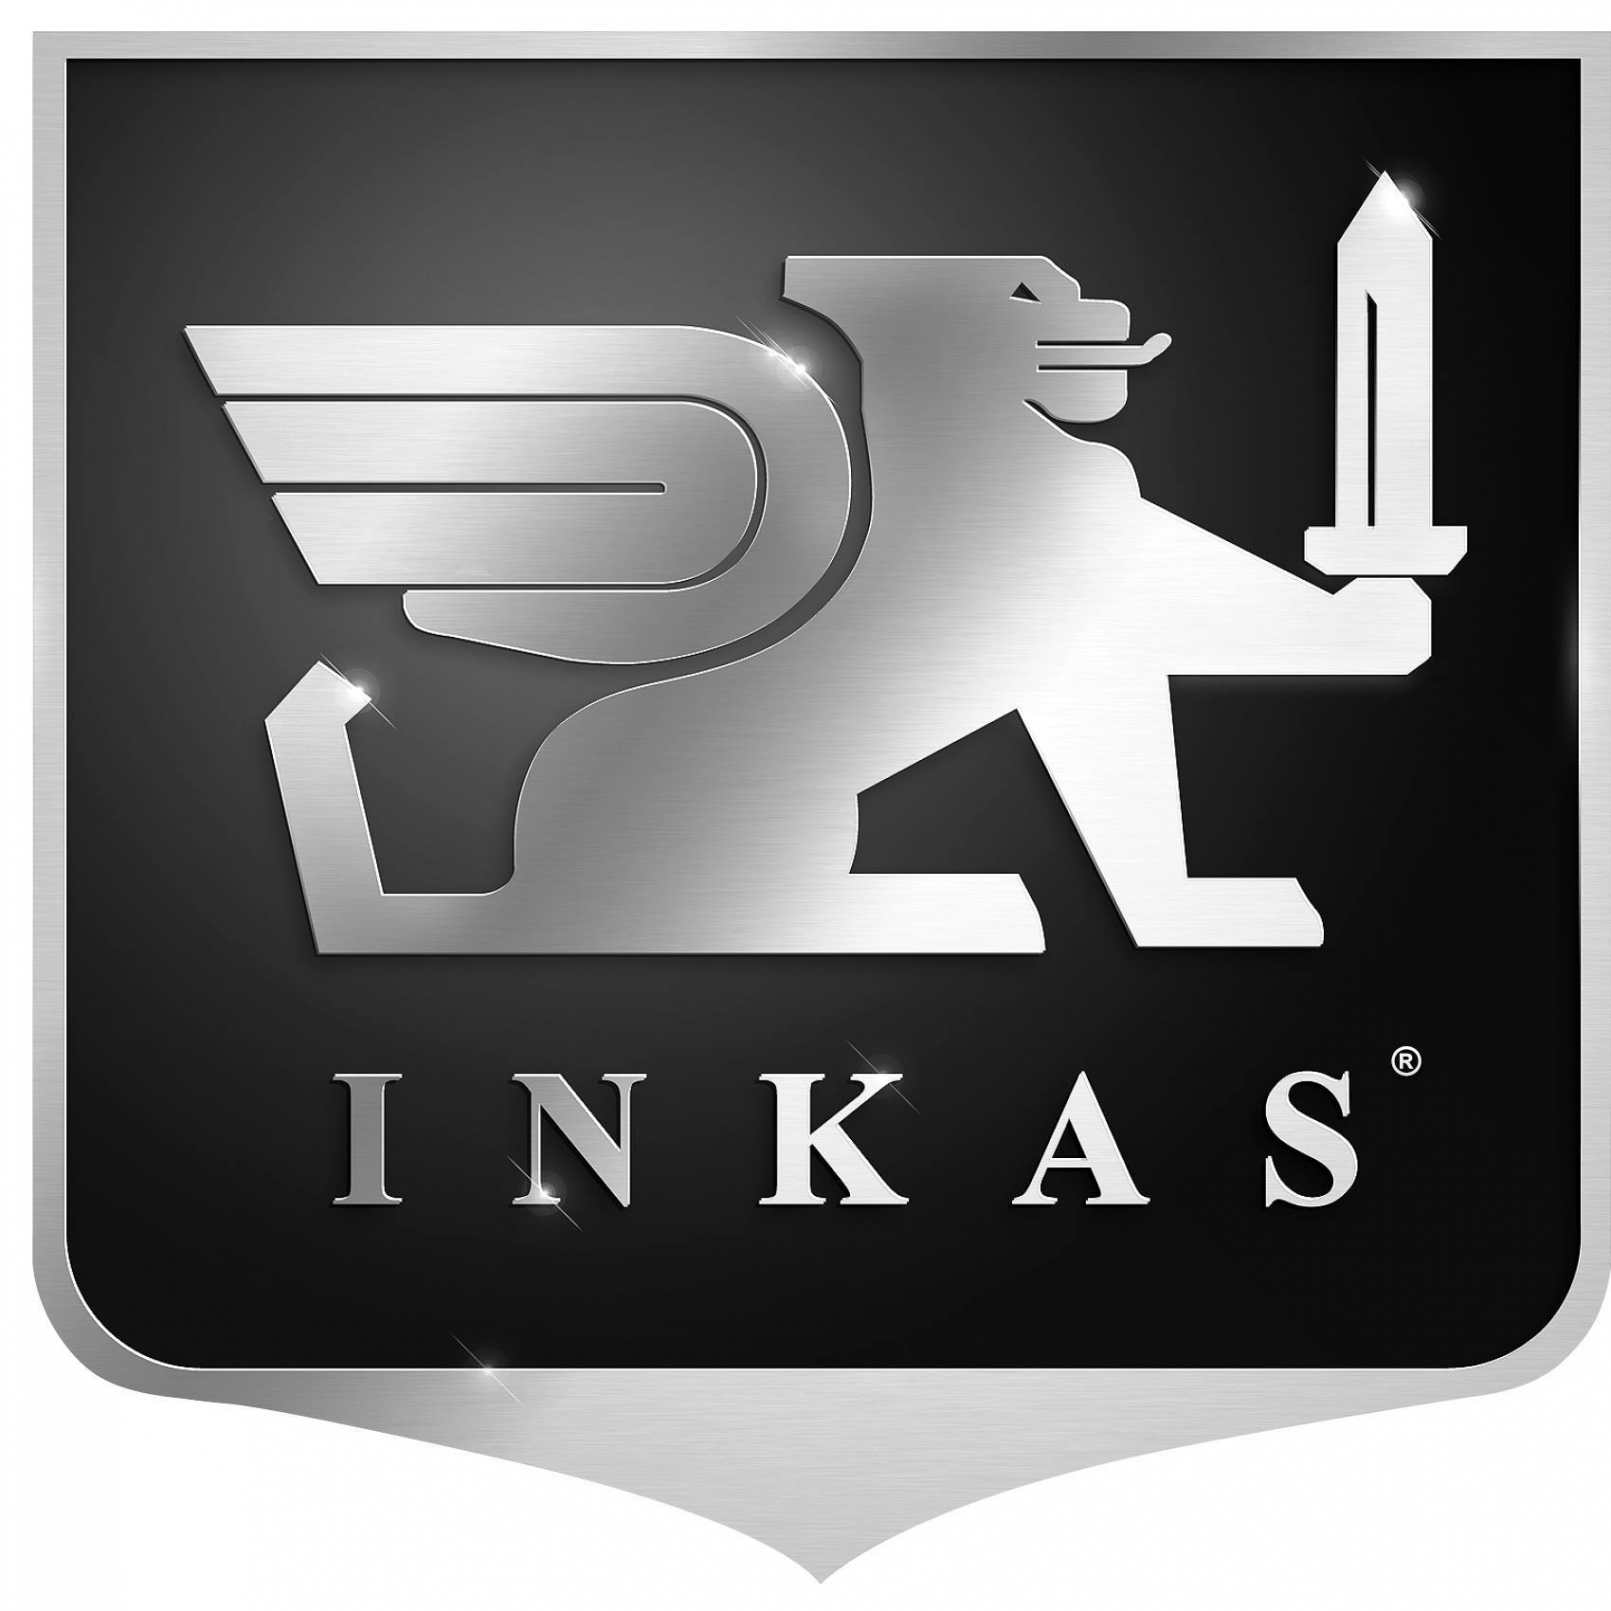 INKAS® Armored Vehicle Manufacturing Logo